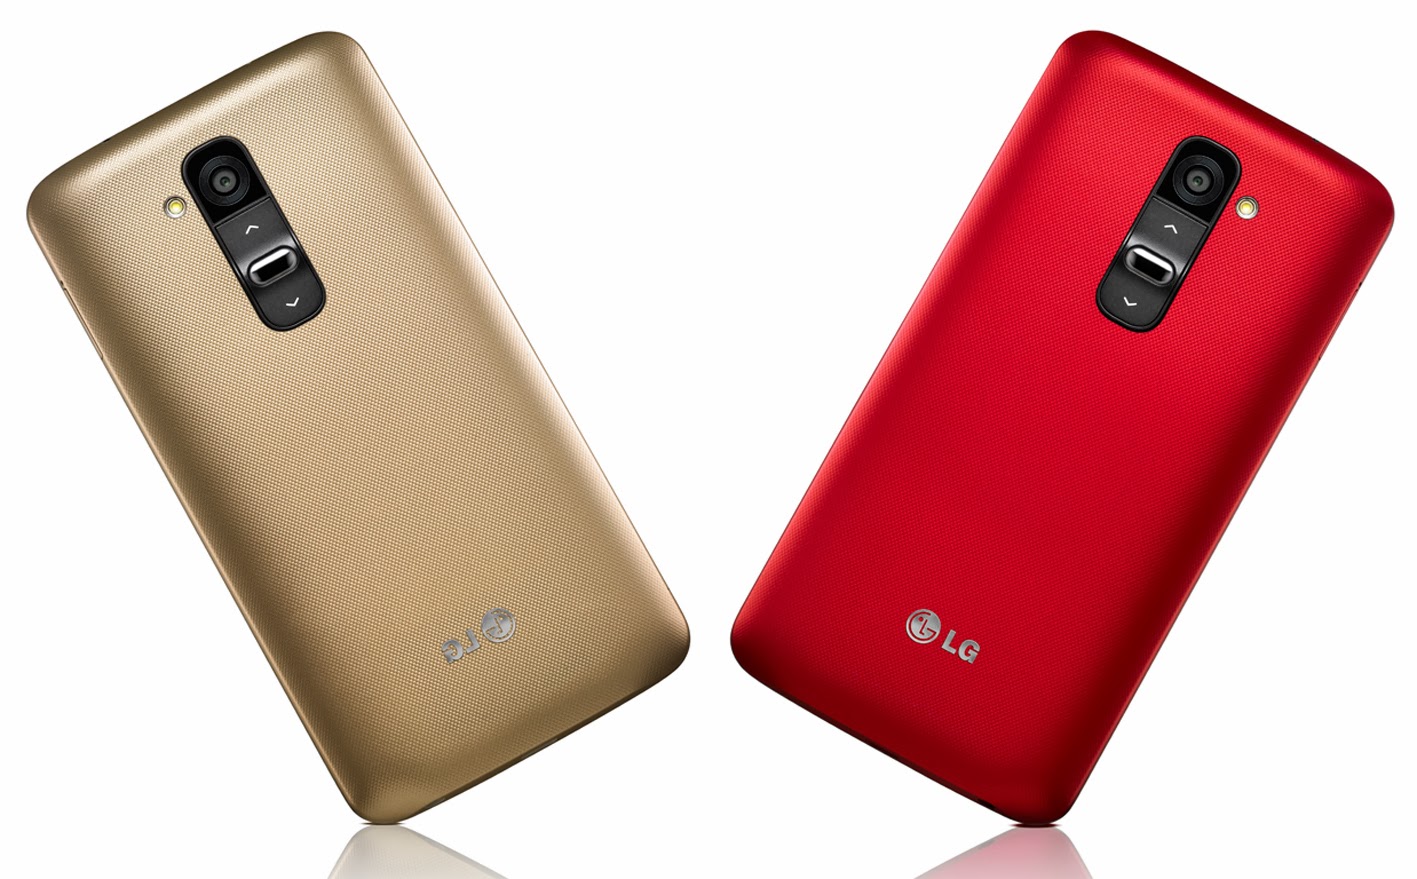 4g 2sim. LG g330. LG g3600. LG g2 d802 32gb. LG G Pro 2.